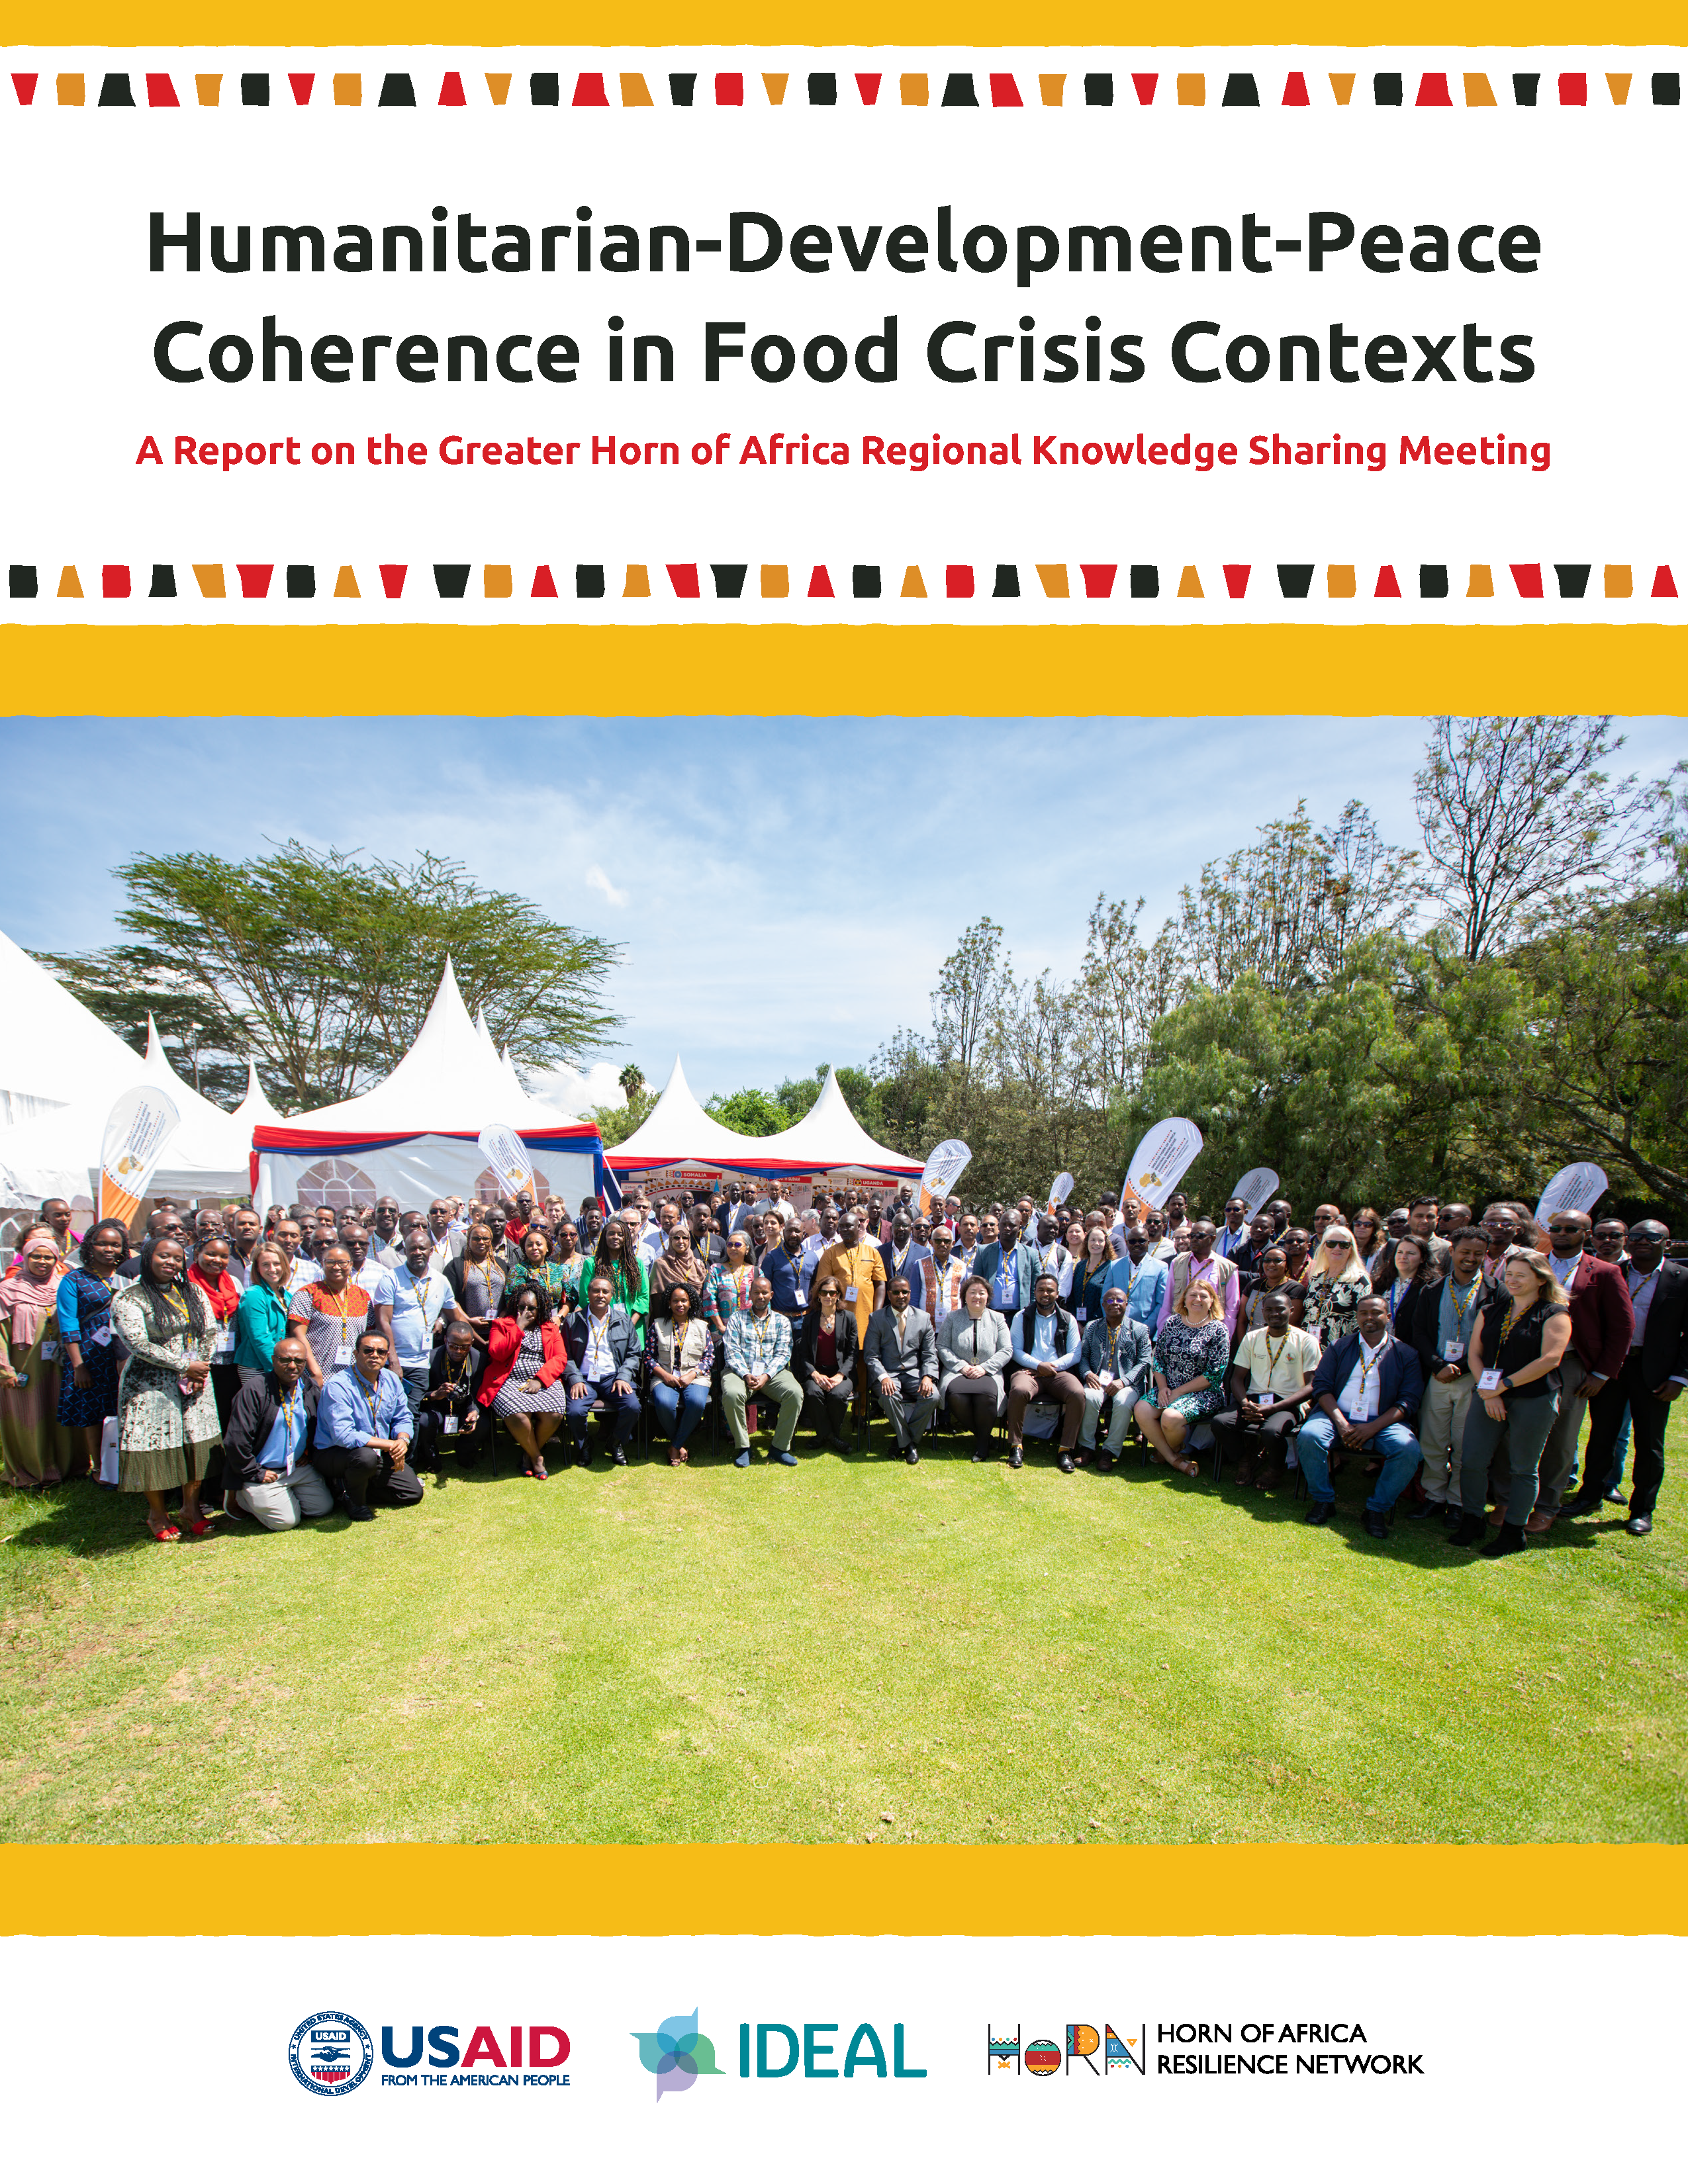 Page de couverture de Cohérence humanitaire-développement-paix dans les contextes de crise alimentaire Un rapport sur la réunion régionale de partage des connaissances dans la Grande Corne de l'Afrique